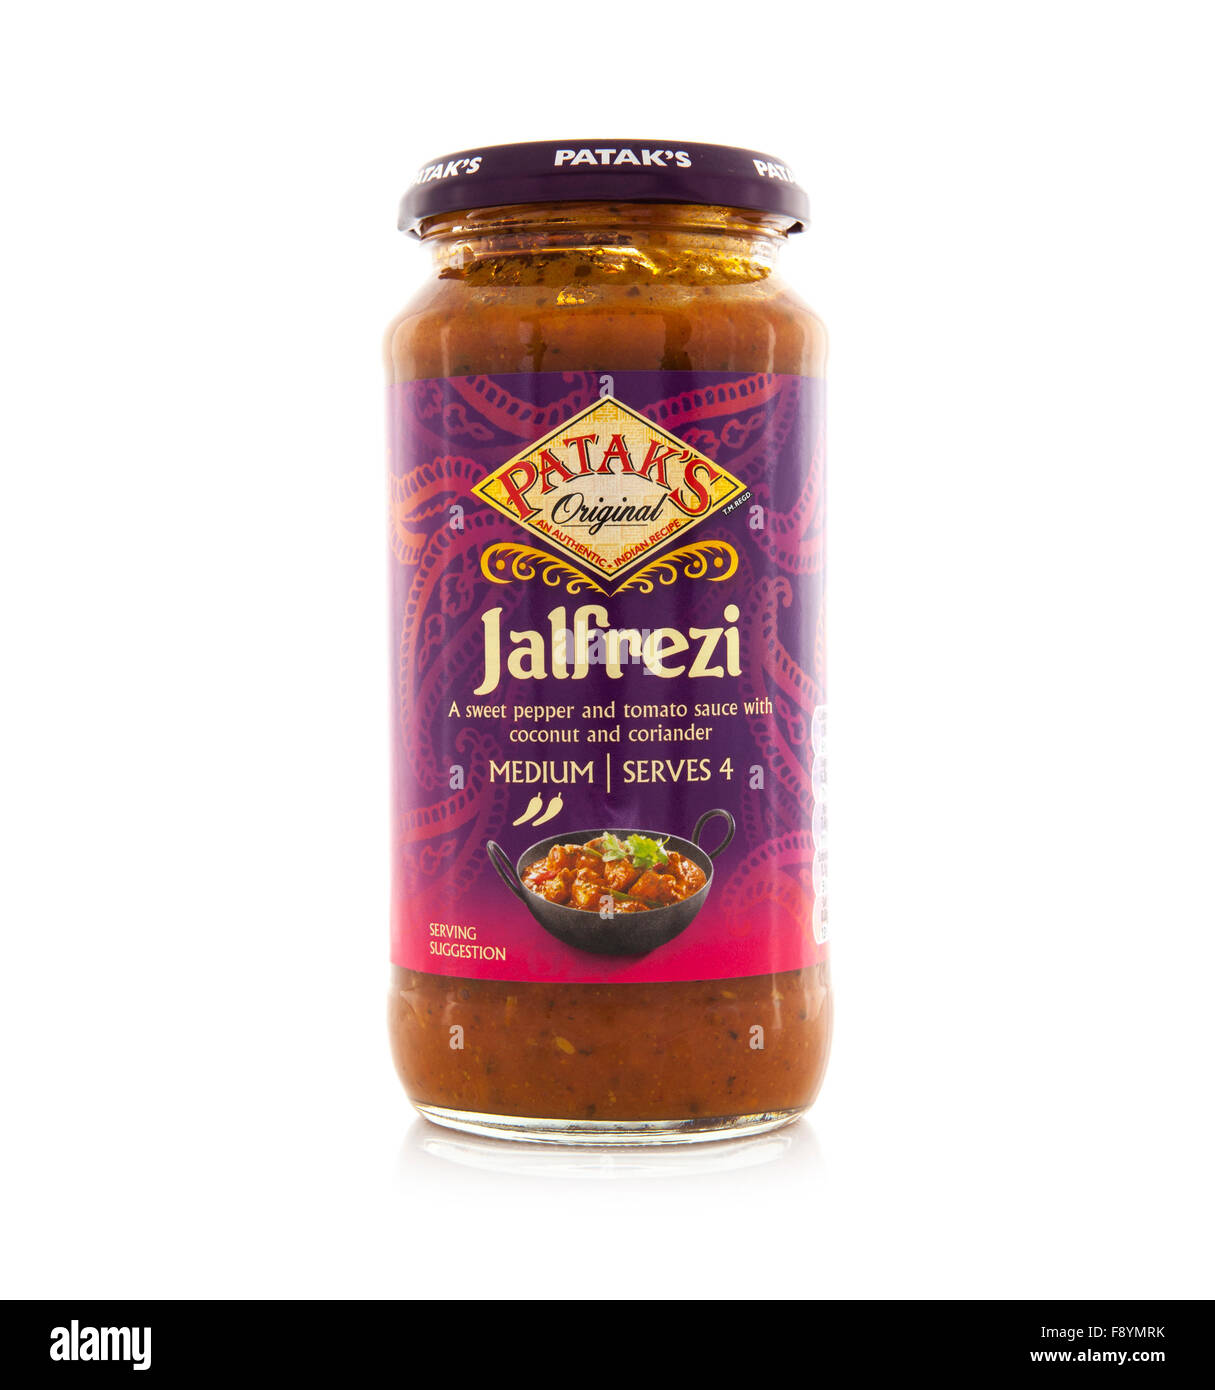 Jar of Pataks Jalfrezi Original Curry Sauce on a white background Stock Photo